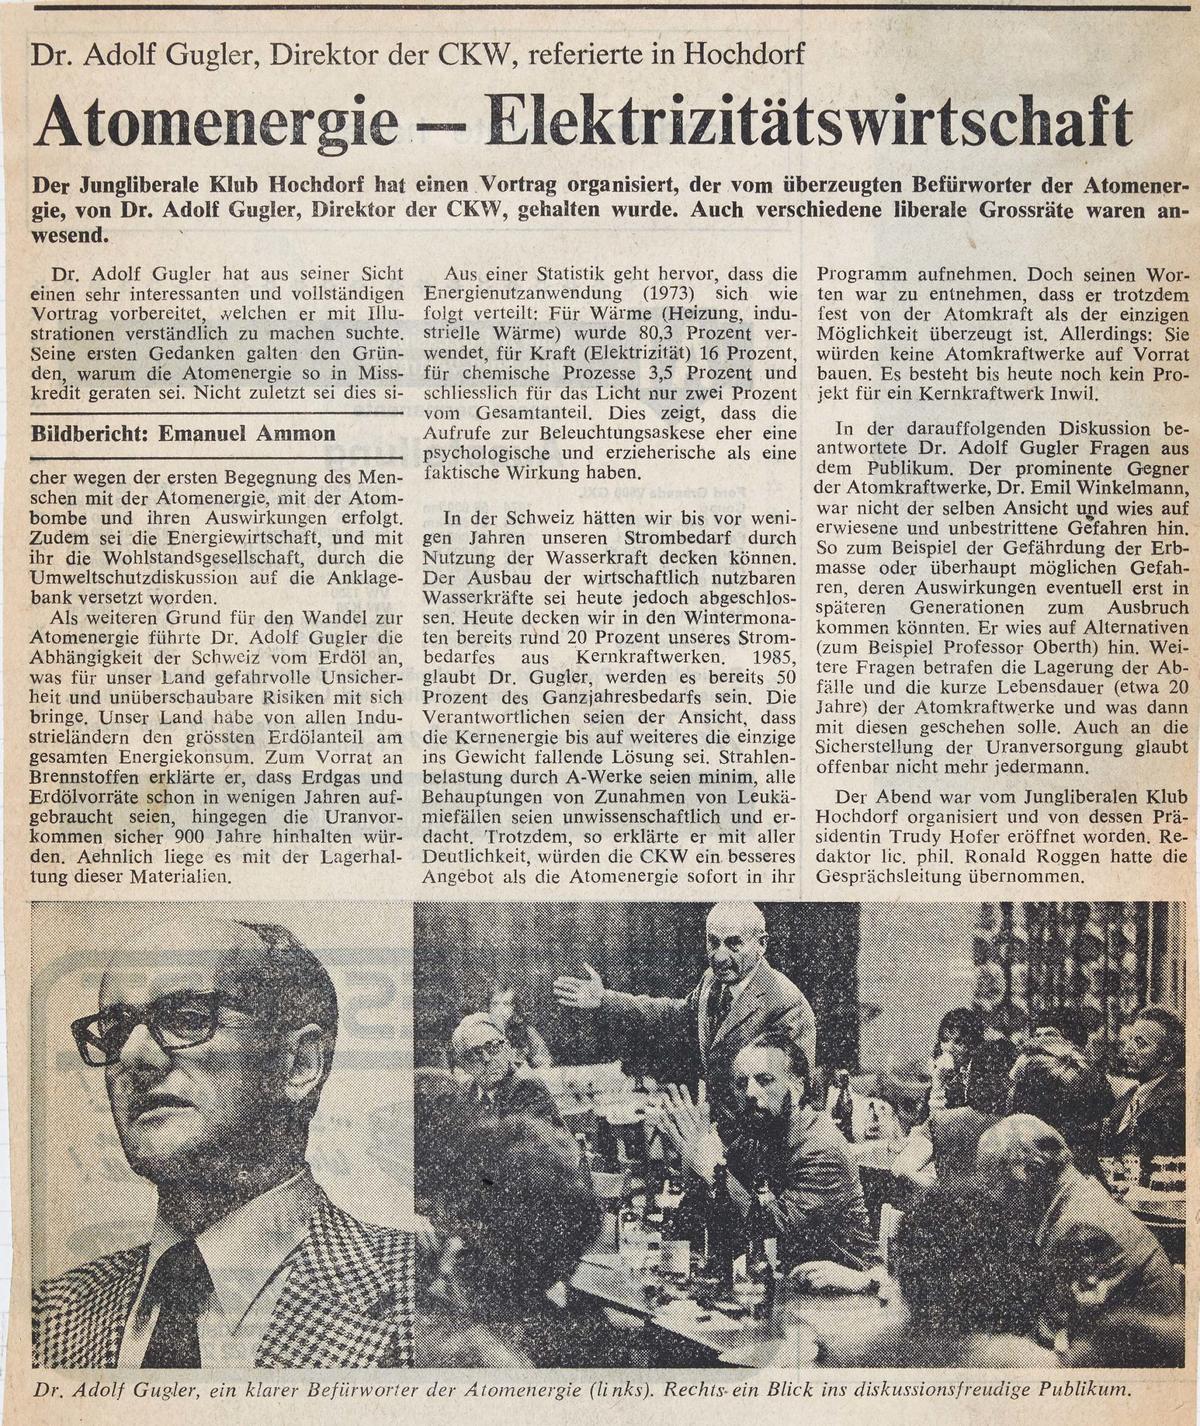 Der damalige CKW-Chef Adolf Gugler lieferte sich Mitte der 70-er-Jahre hitzige Diskussionen rund um das geplante Atomkraftwerk Inwil.